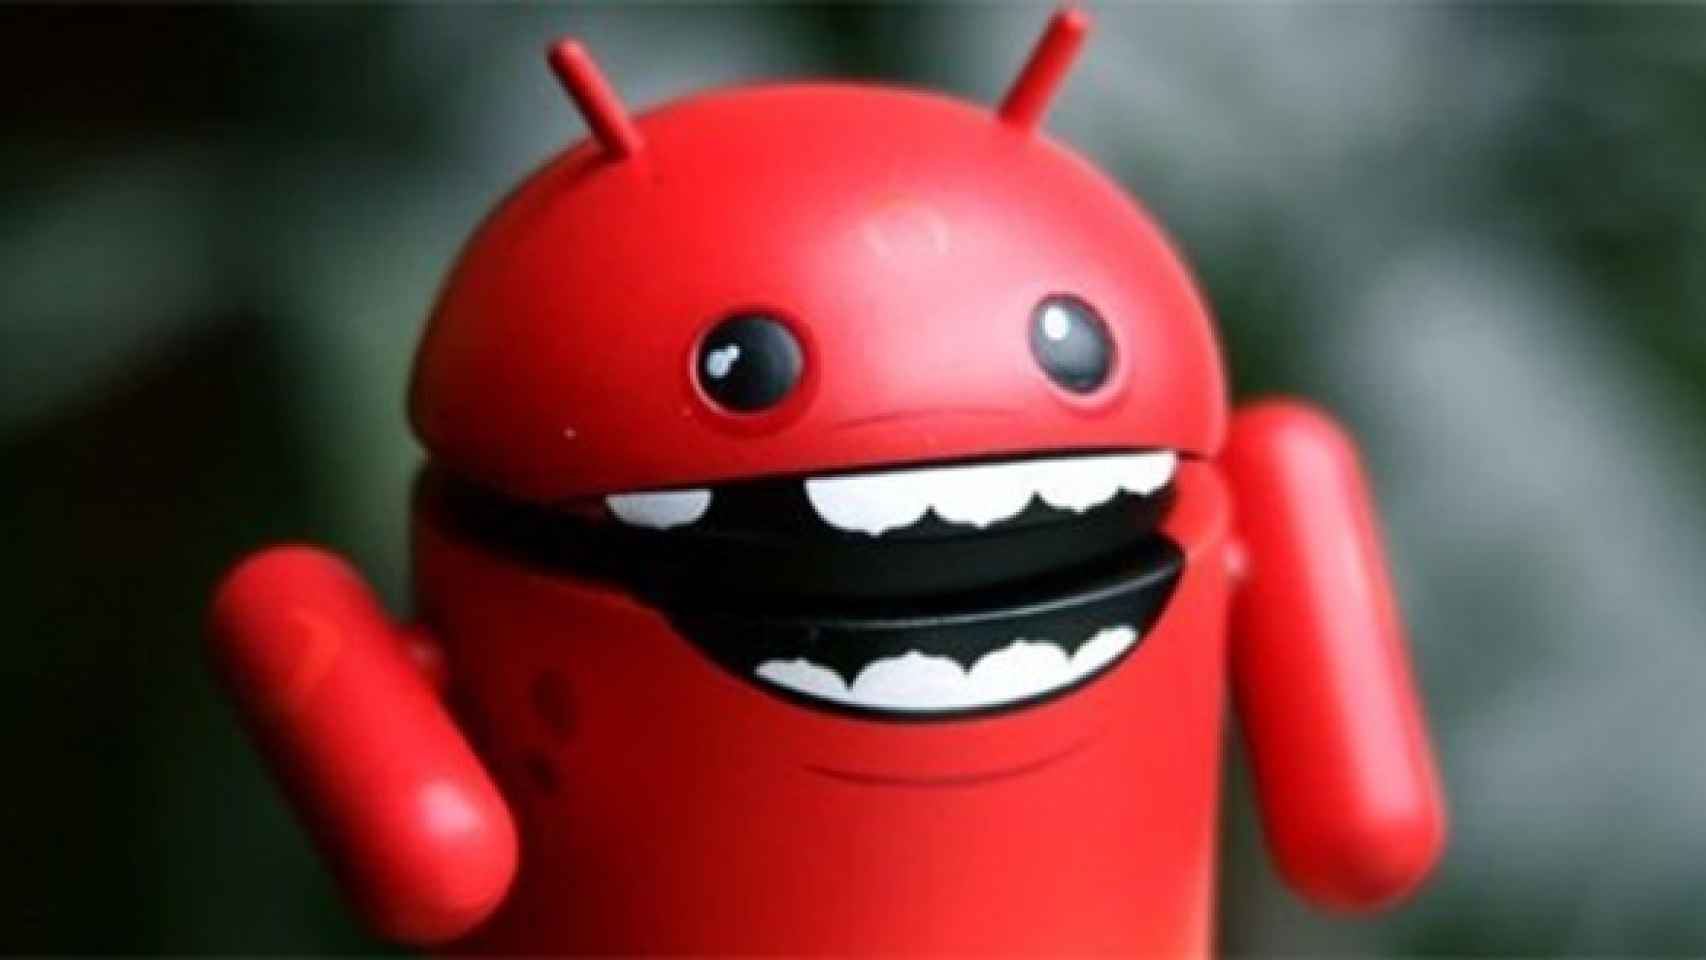 Los fallos y errores de Android 5.0 Lollipop